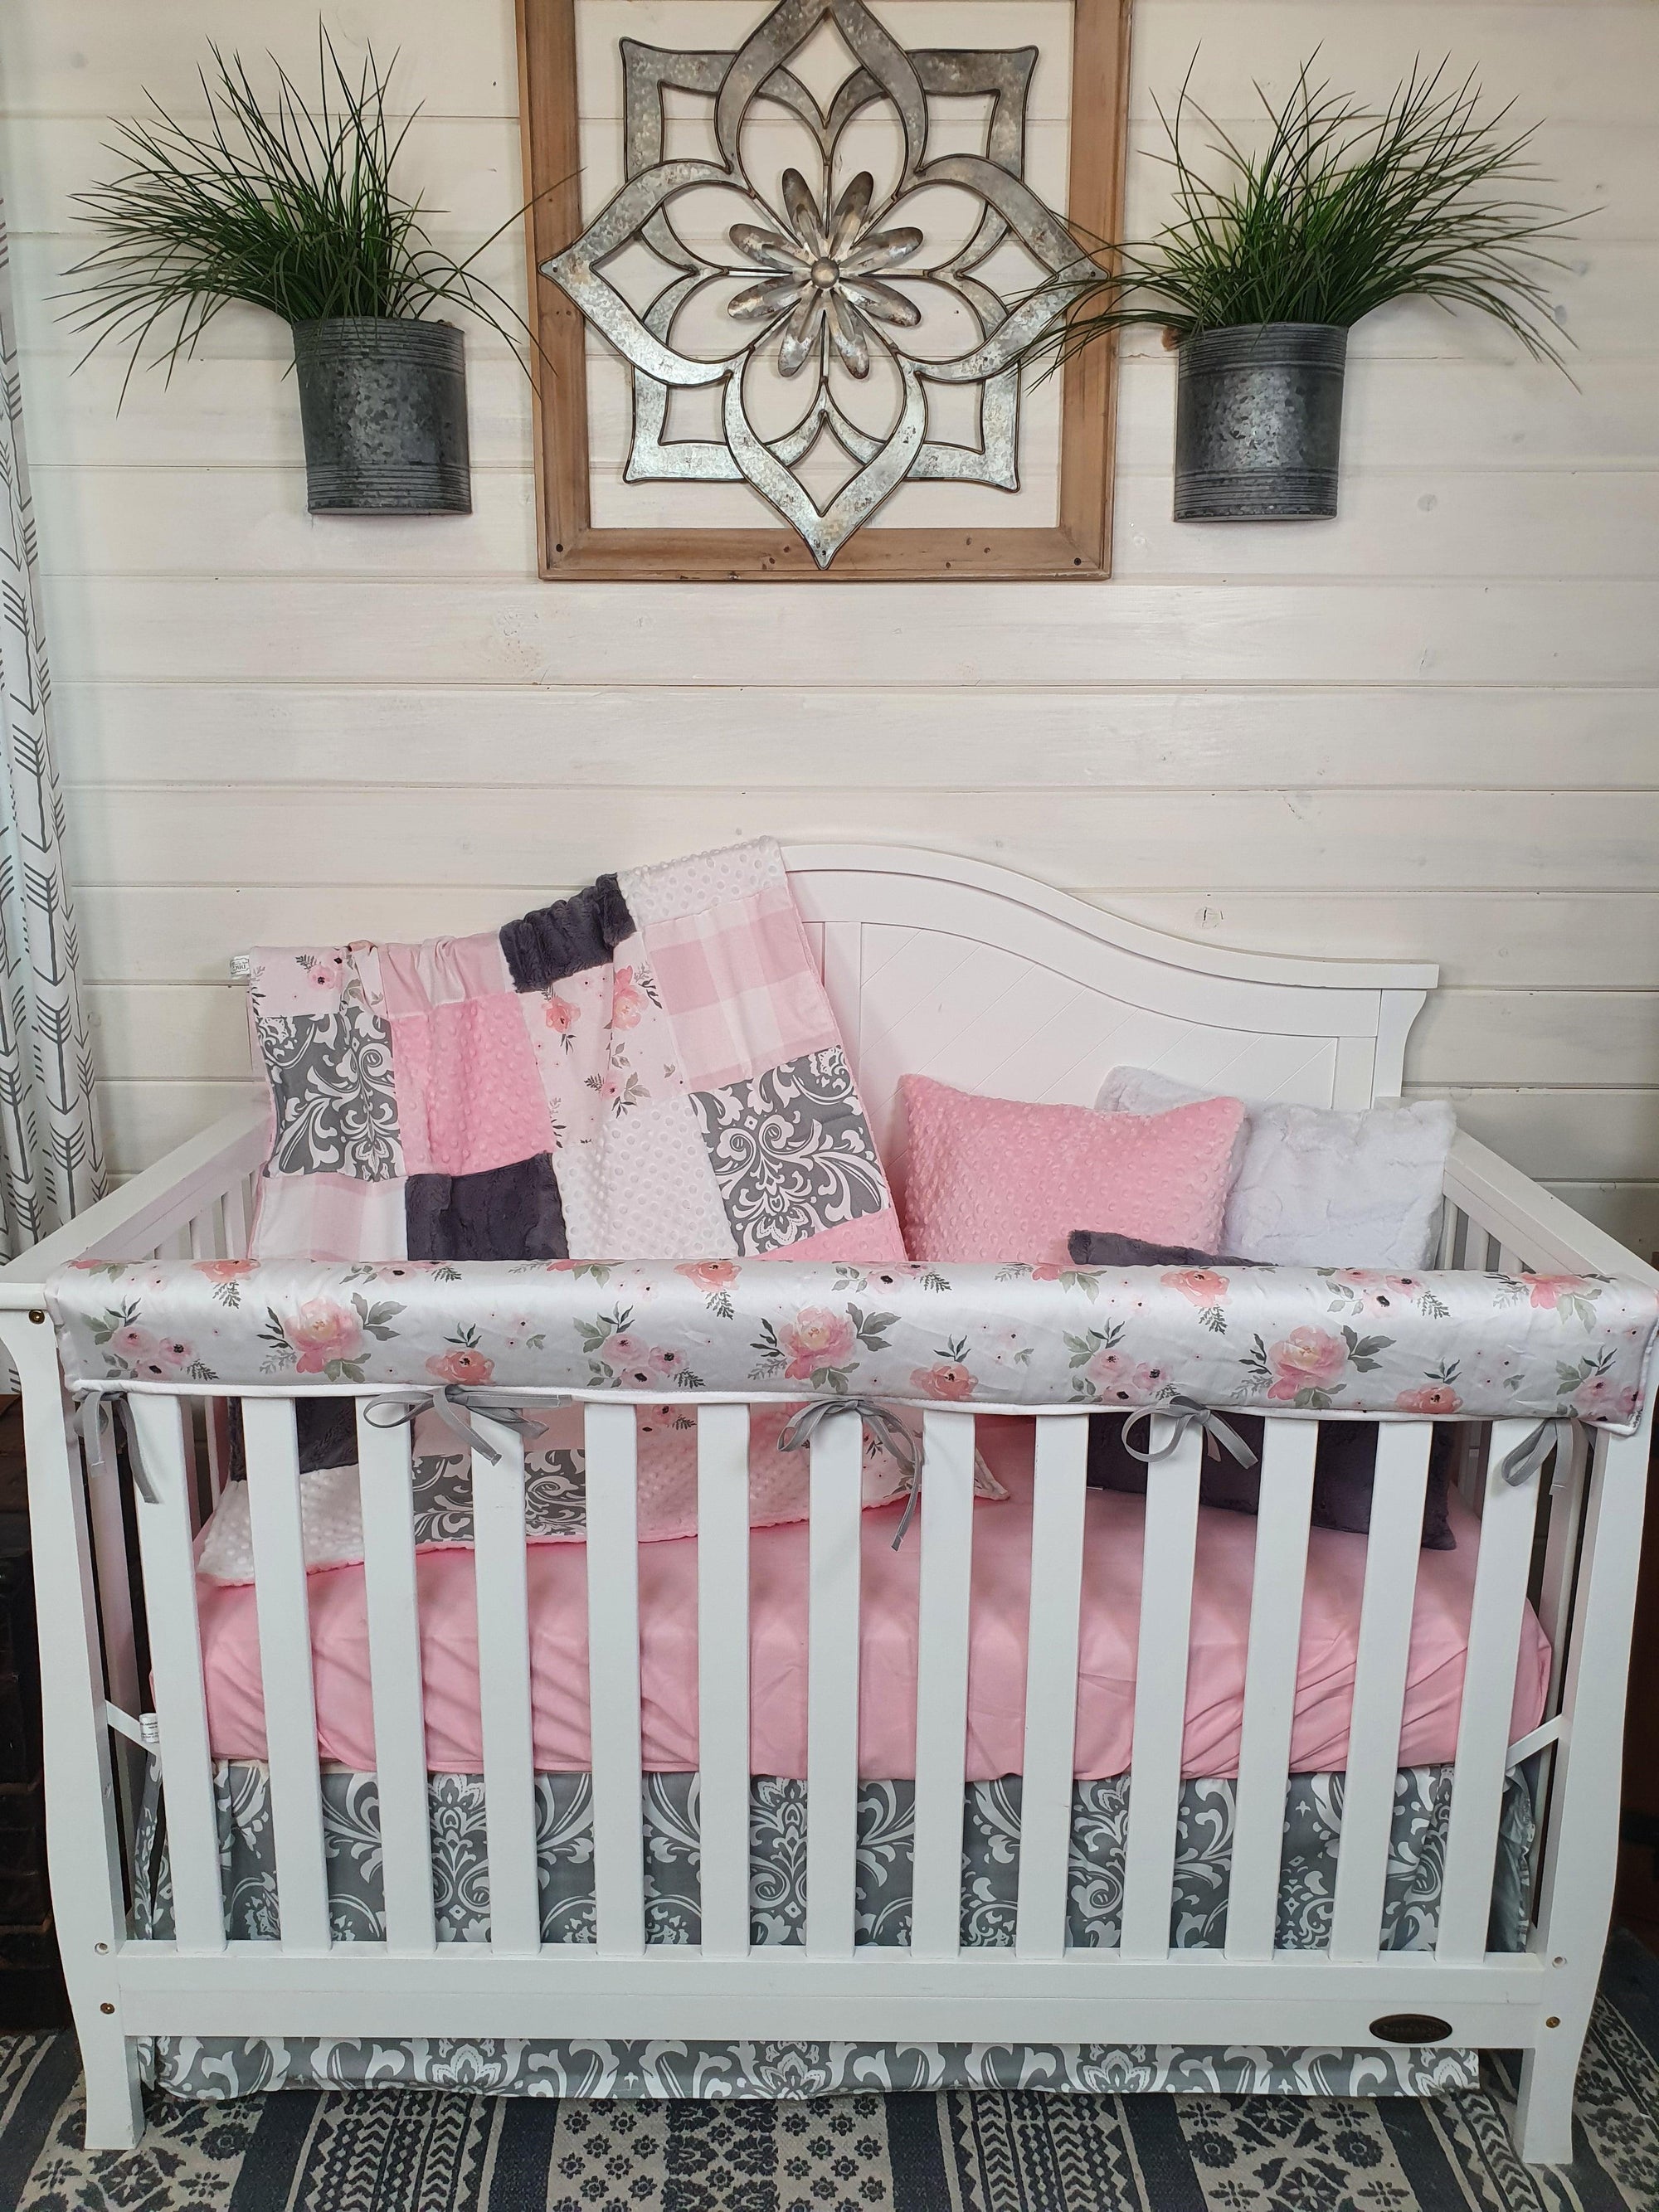 New Release Girl Crib Bedding- Elegant Rose Baby Bedding Collection - DBC Baby Bedding Co 